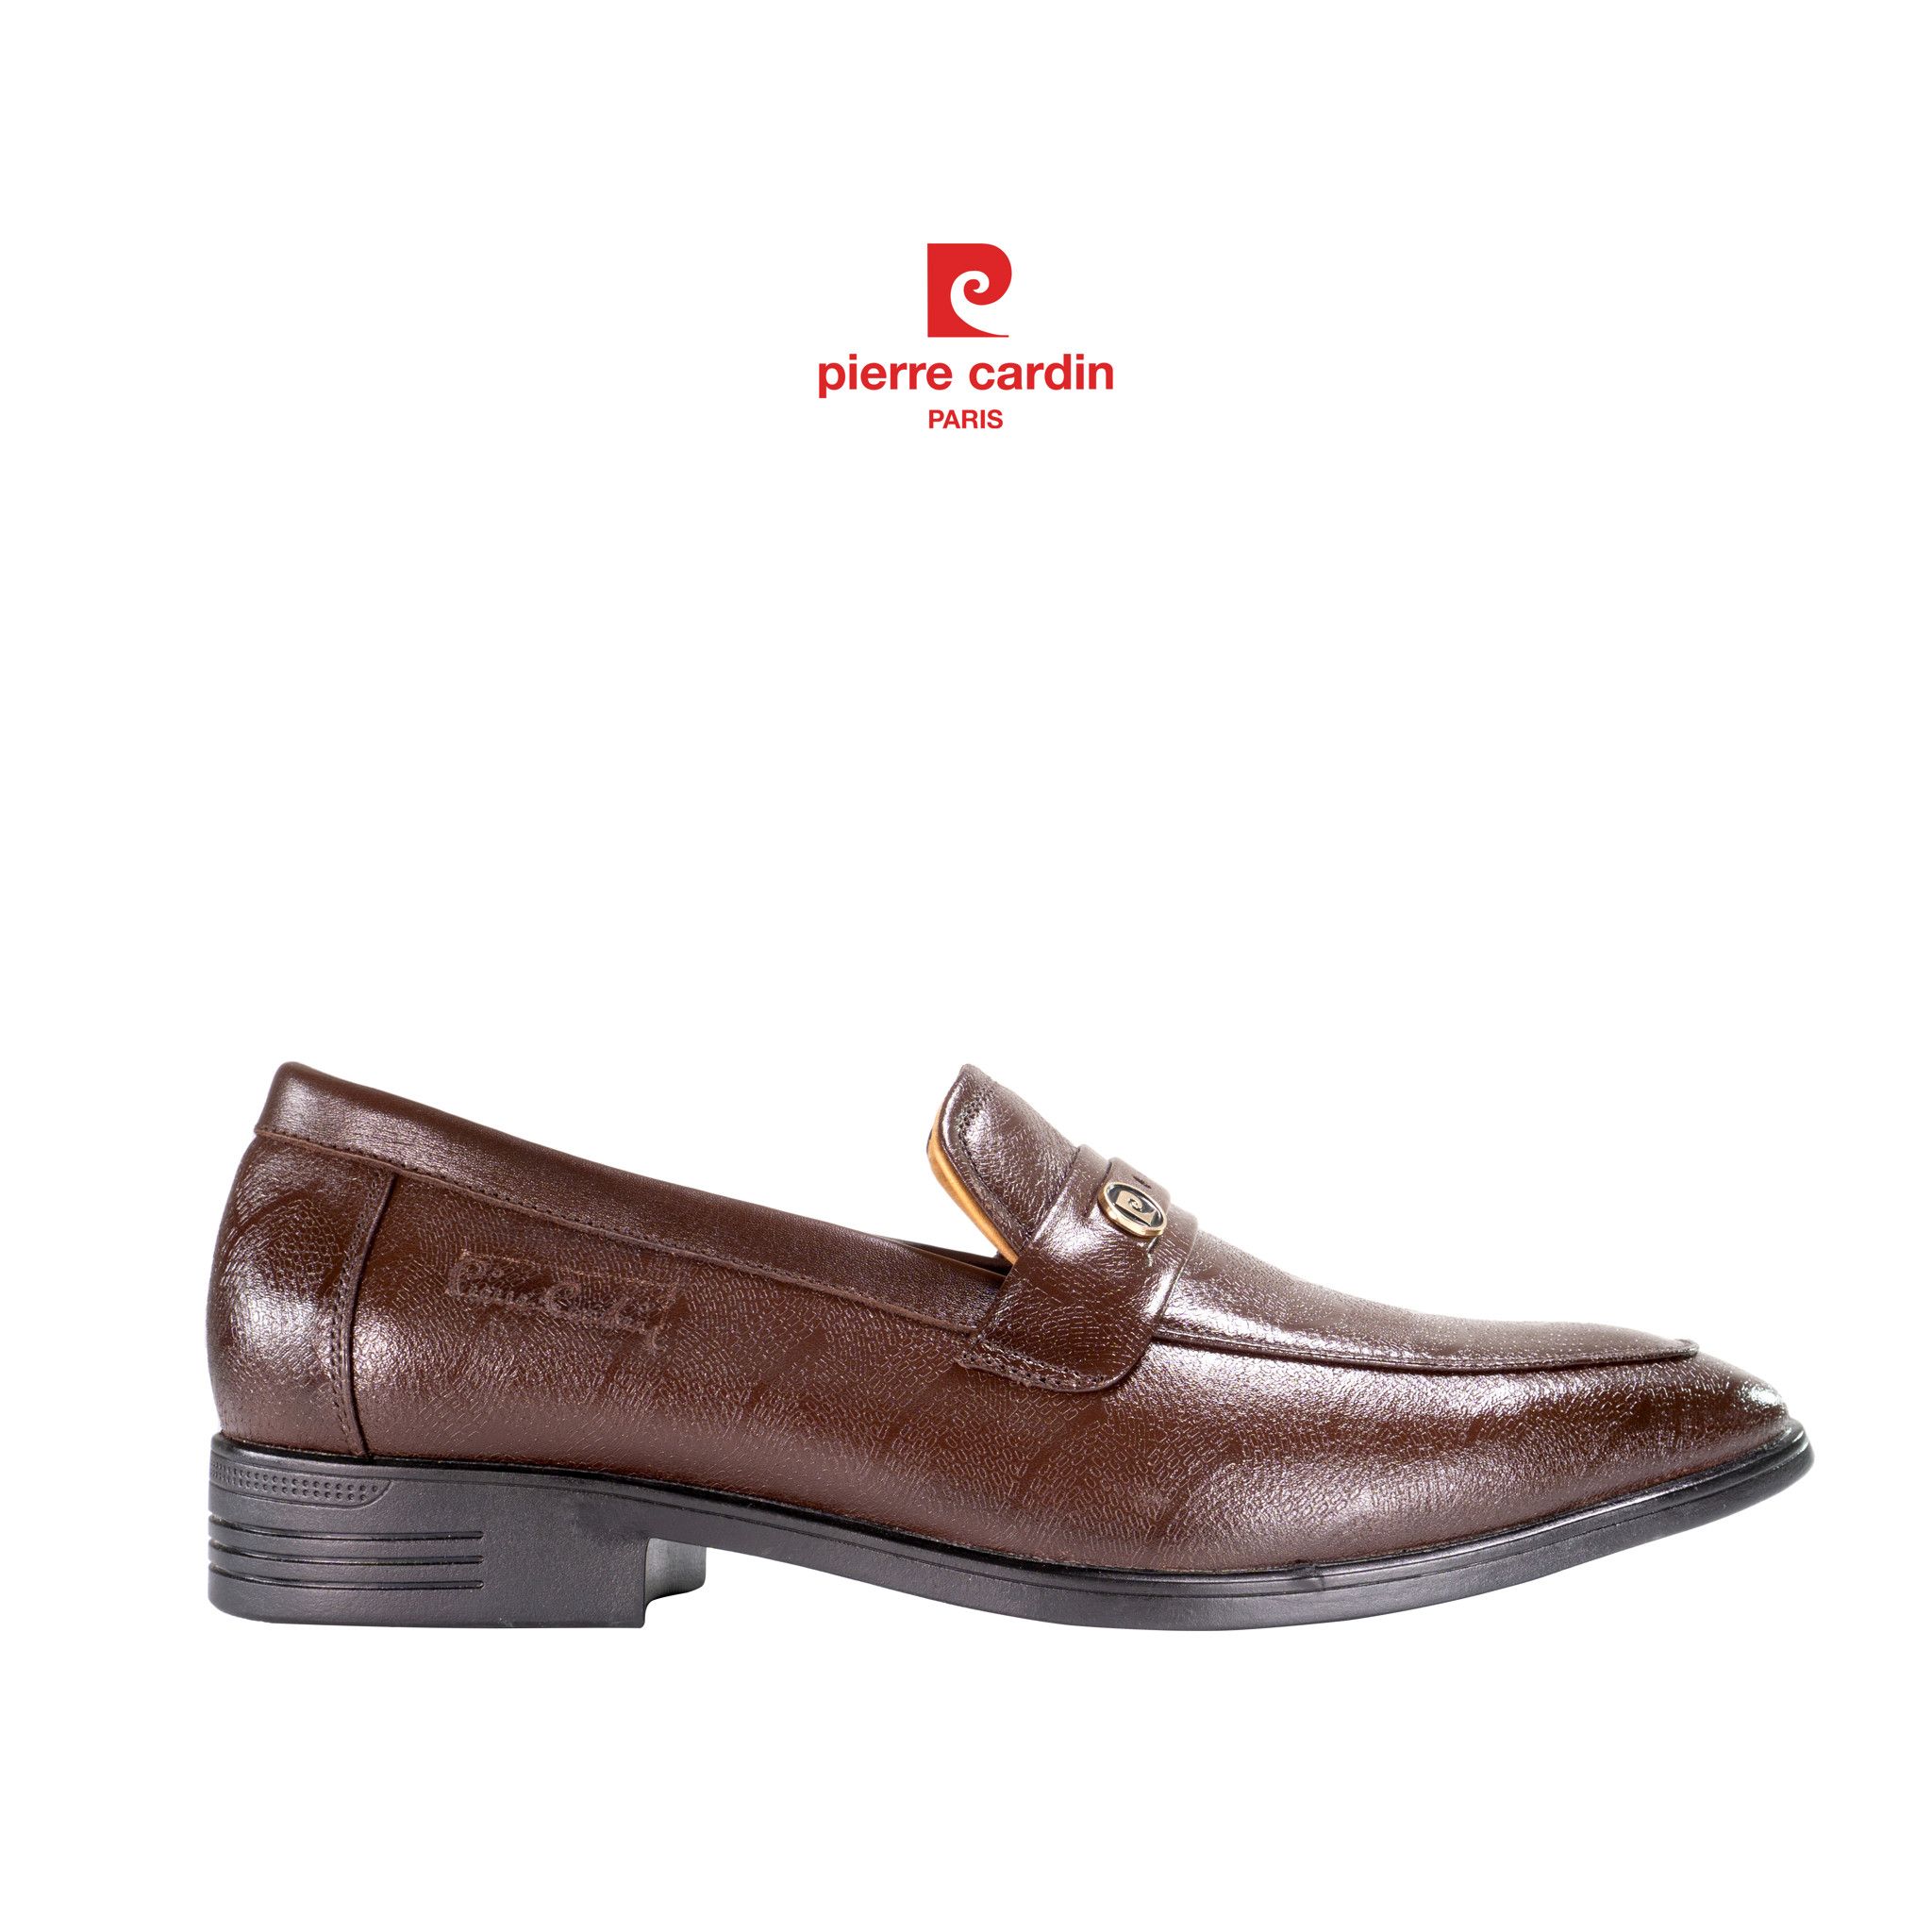 Pierre Cardin Paris Vietnam: Loafer Shoes - PCMFWLG 756